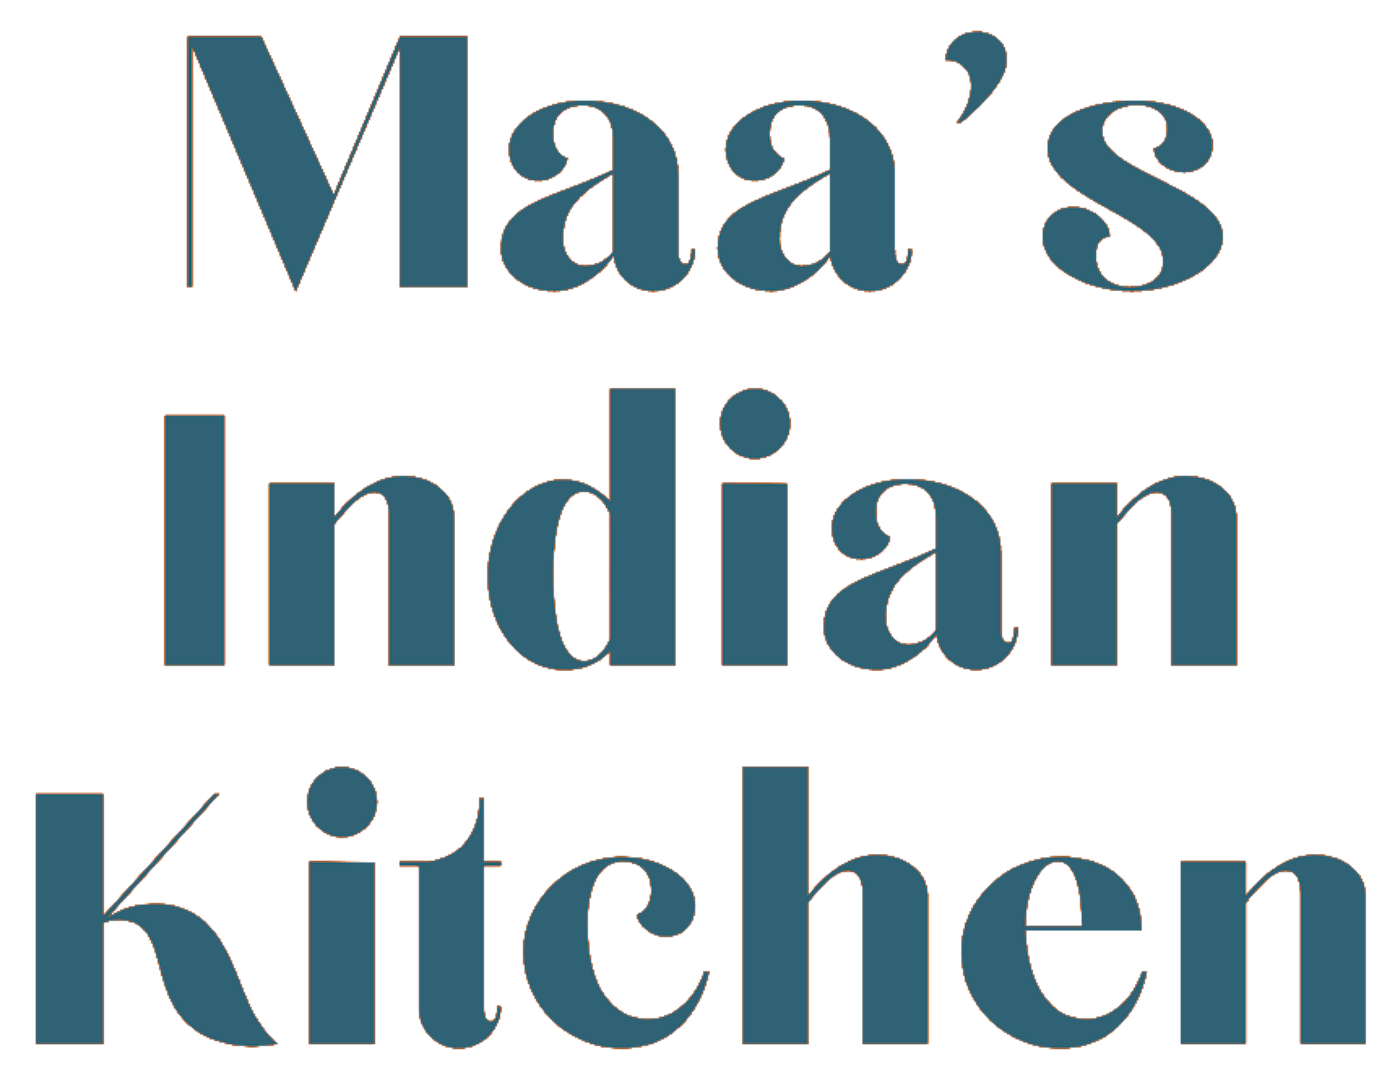 Maa's Indian Kitchen